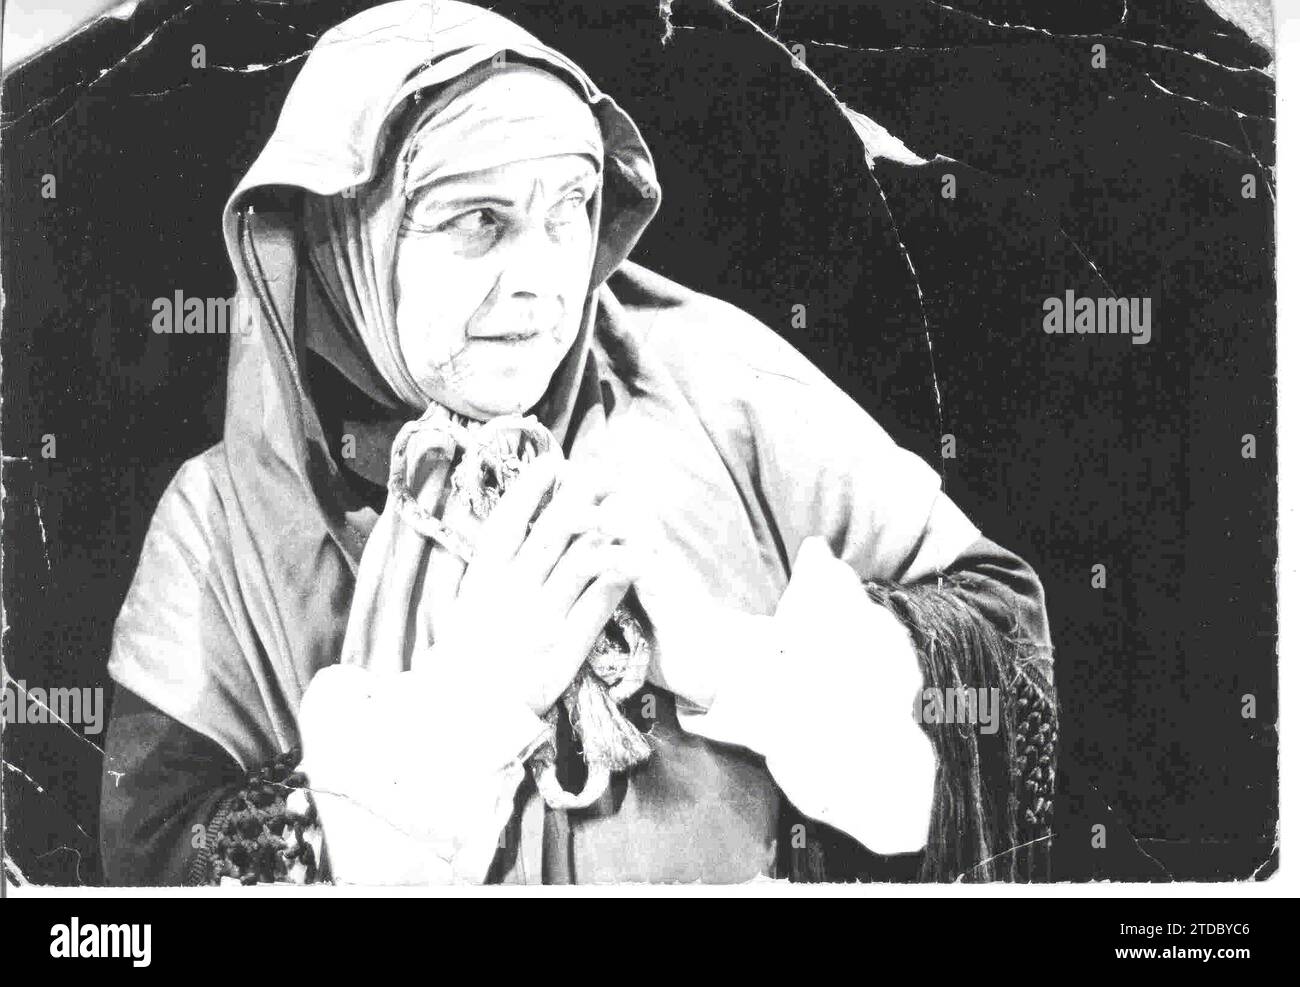 12/31/1967. Maria Zamorano Ruiz, Talegona, dans le rôle de Celestina, qu'elle a joué à la fin des années 60 dans toute l'Espagne date approximative. Crédit : Album / Archivo ABC Banque D'Images